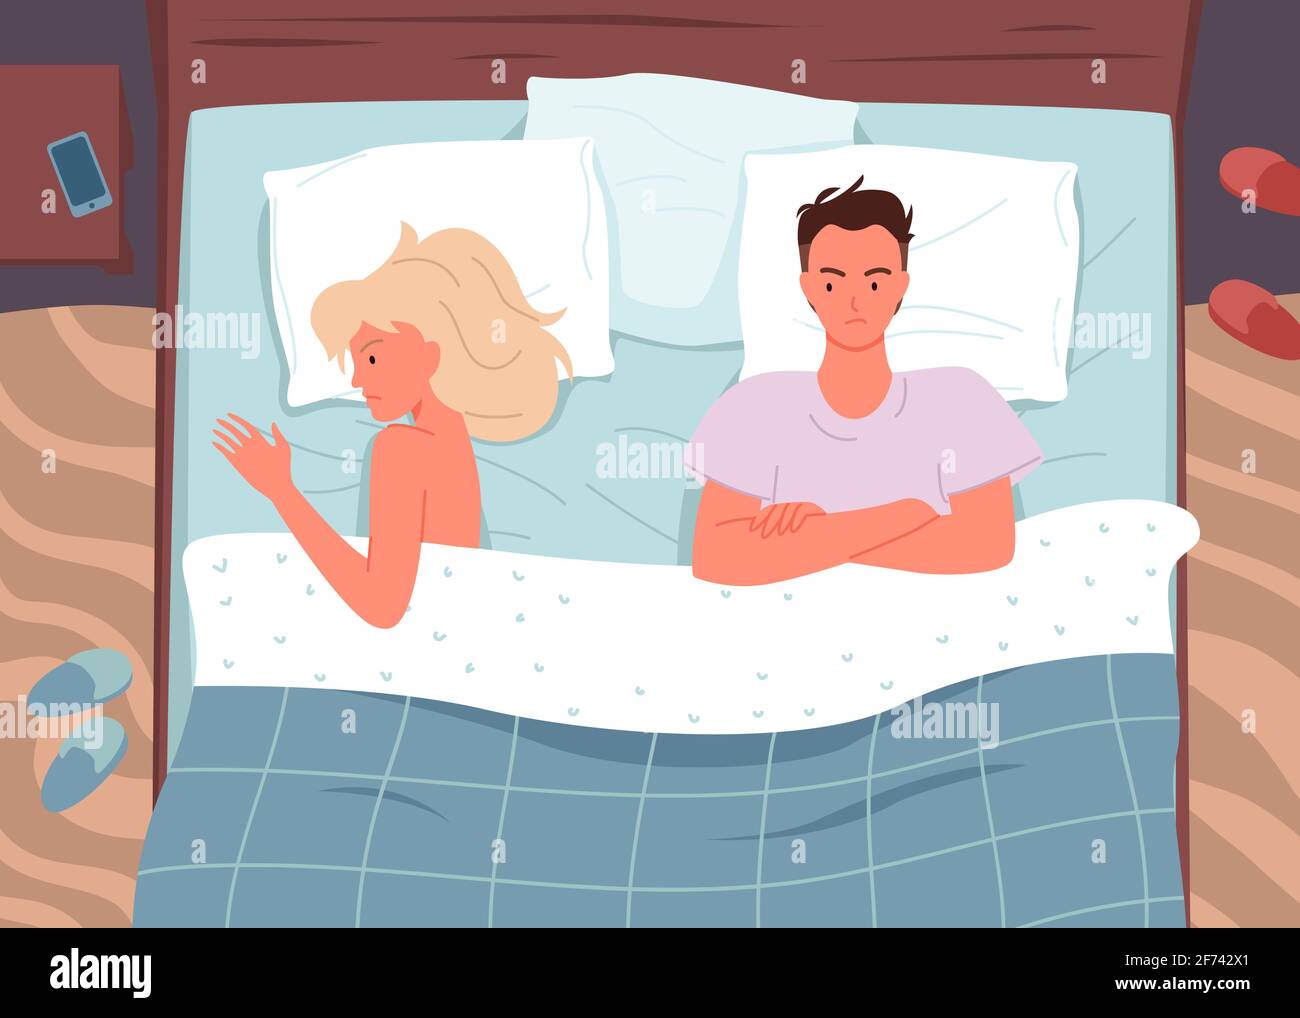 Paar Leute im Bett, Familie Mann Frau liegen auseinander, verärgerte Frau  und Mann streiten sich Stock-Vektorgrafik - Alamy